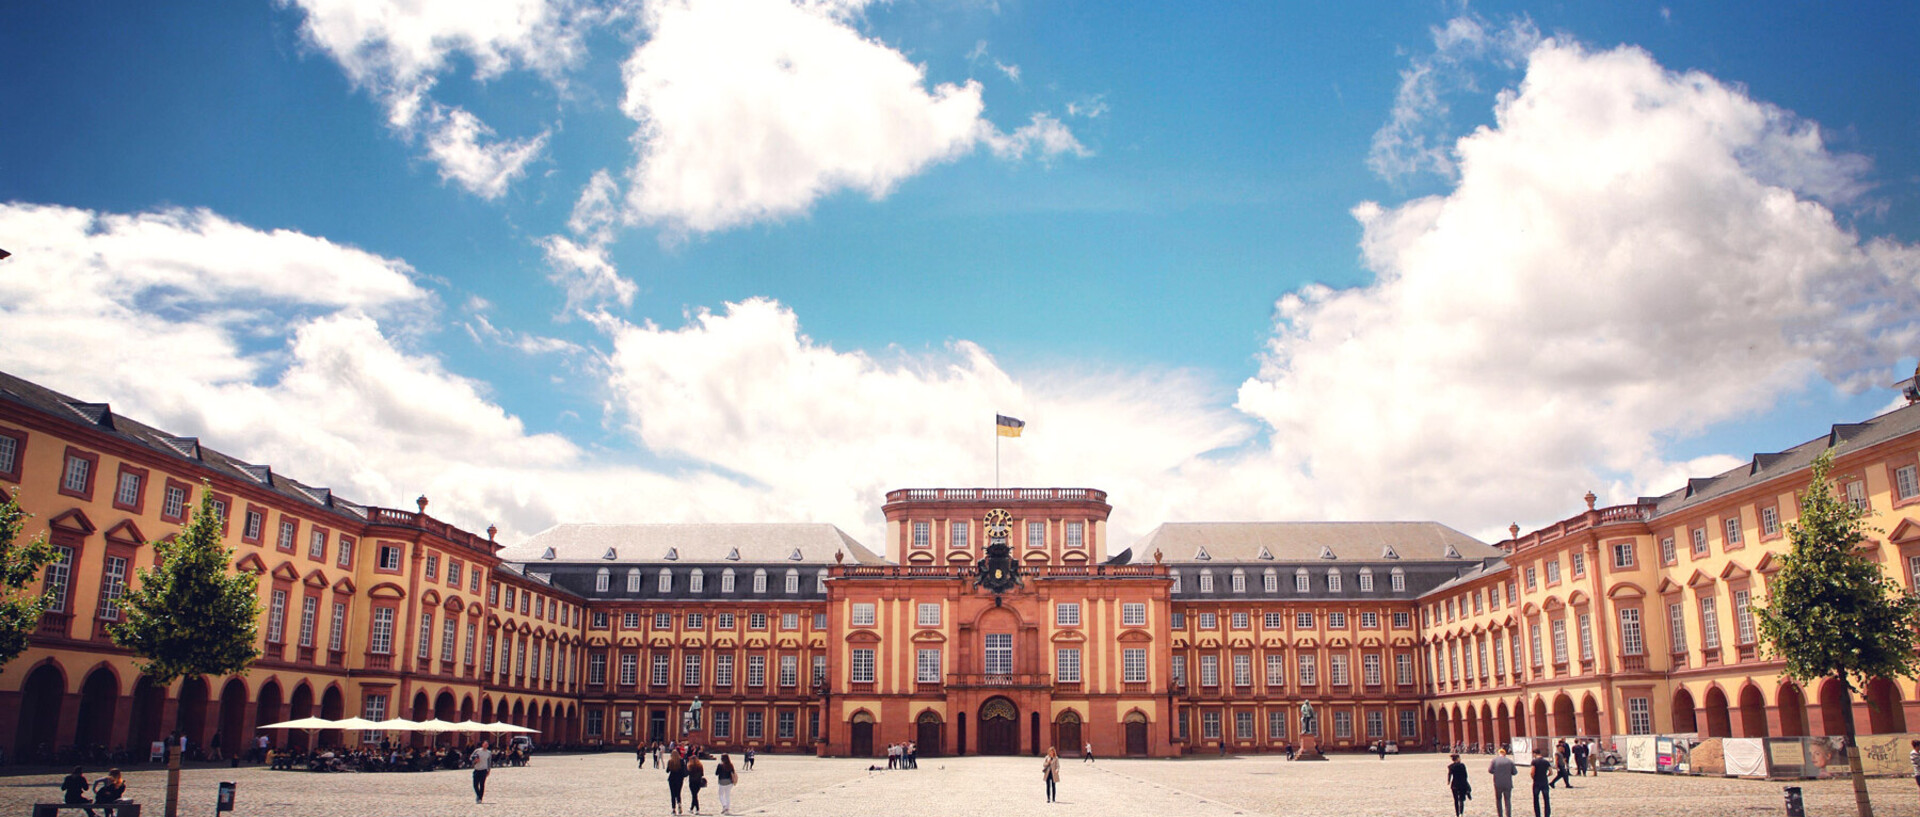 Das Barock-Schloss der Universität Mannheim steht unter blauem Himmel. Es ist von unzähligen Fenstern, rotem Sandstein und einer gelben Fassade geprägt.